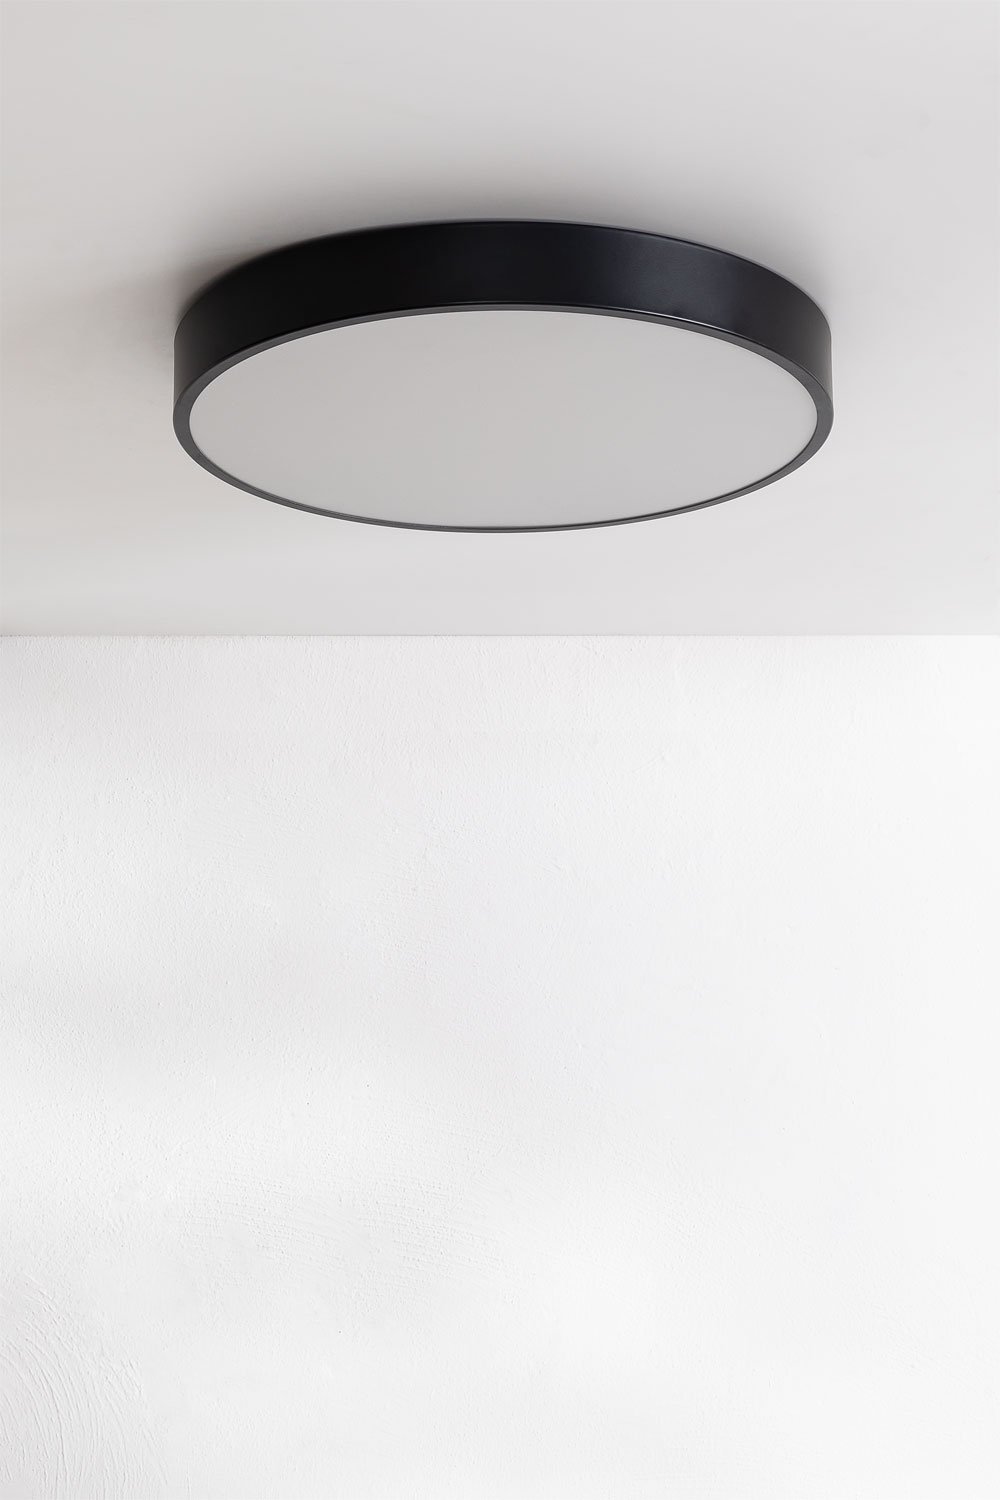 Plafonnier LED (Ø40 cm) Cosmin, image de la galerie 1